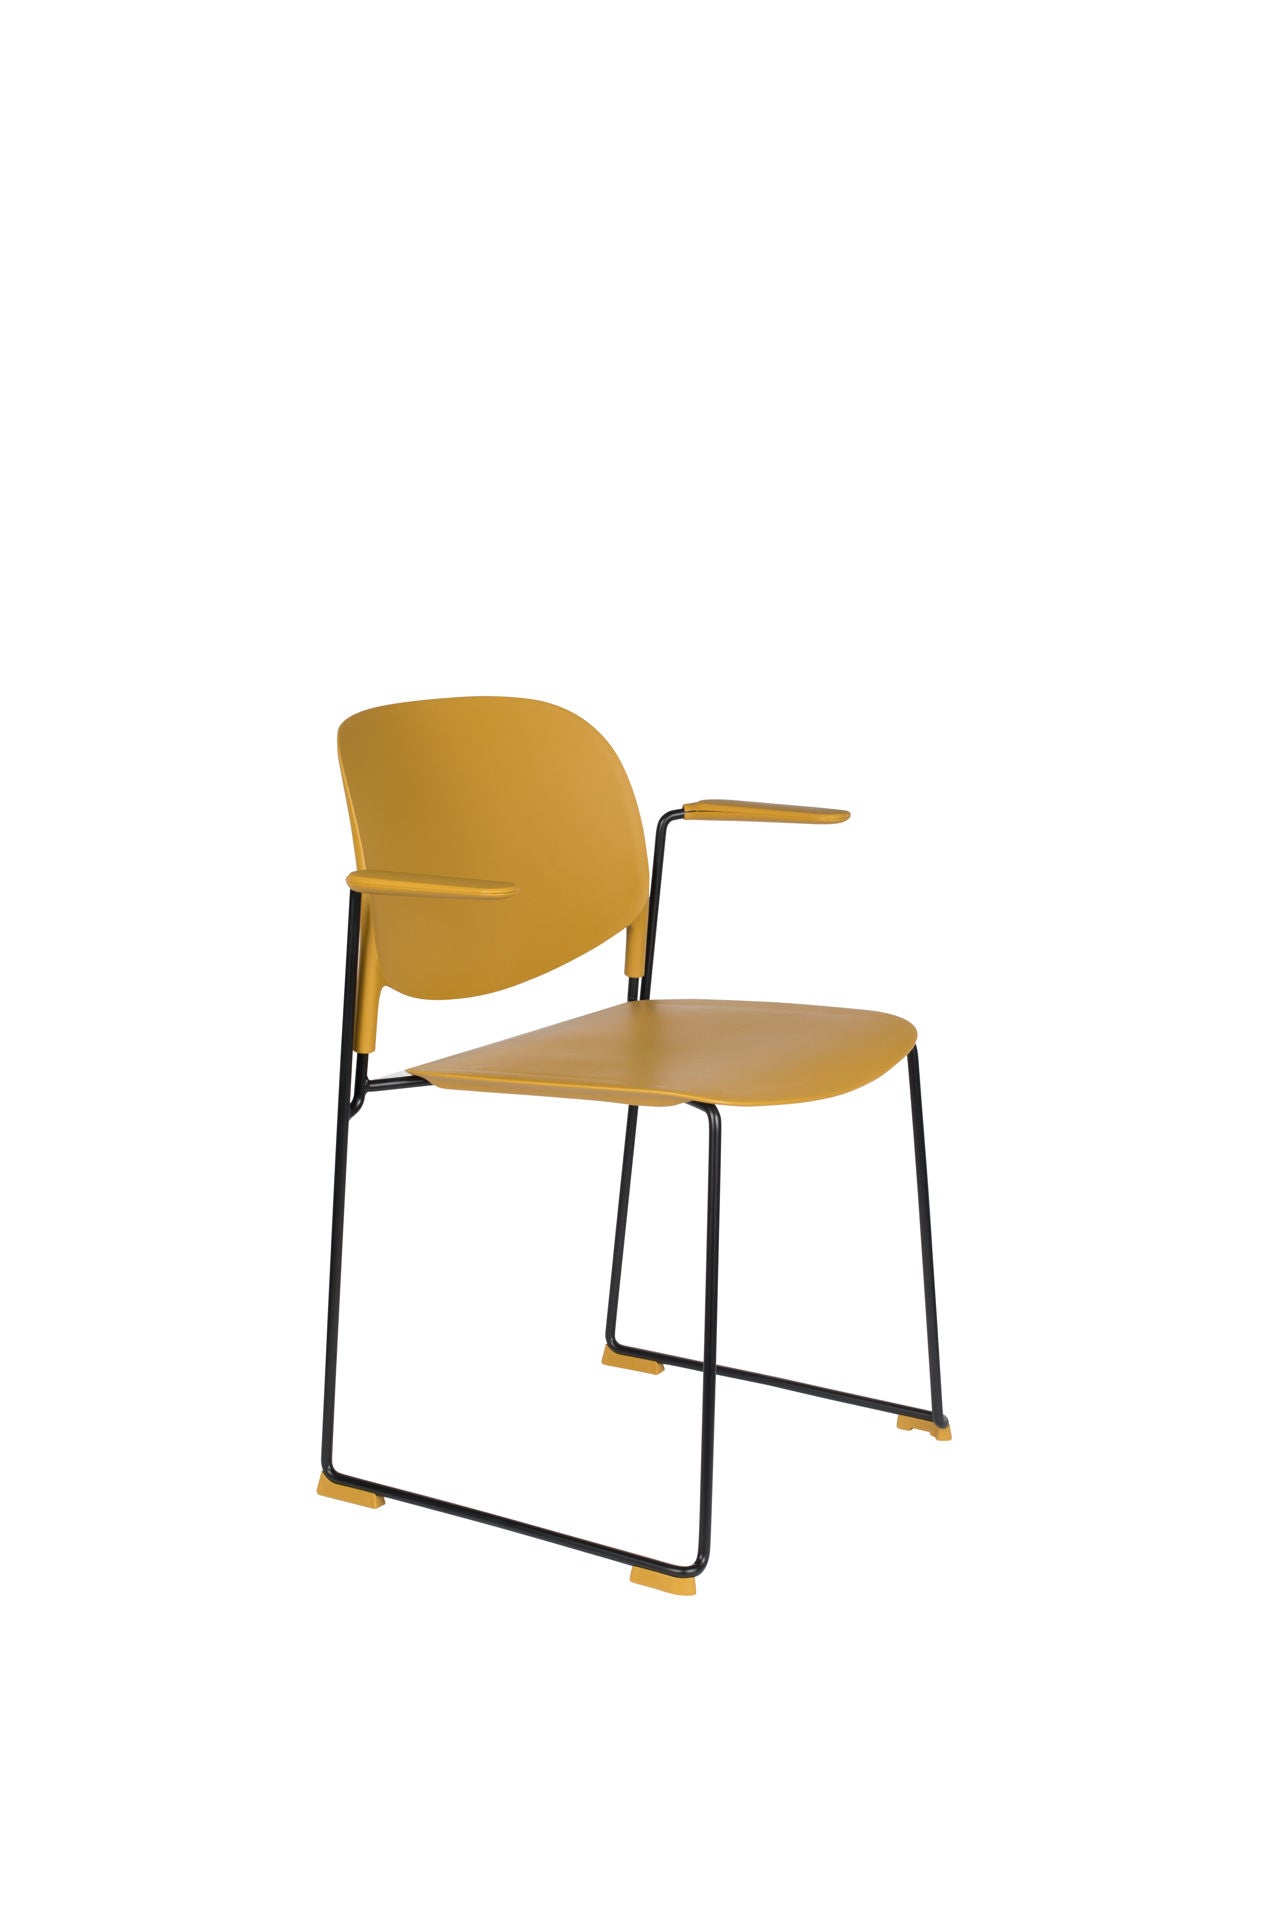 Nancy's Rolesville Chair - Rétro - Ocre, Noir - Polypropylène, Acier, Plastique - 53 cm x 63,5 cm x 80,5 cm